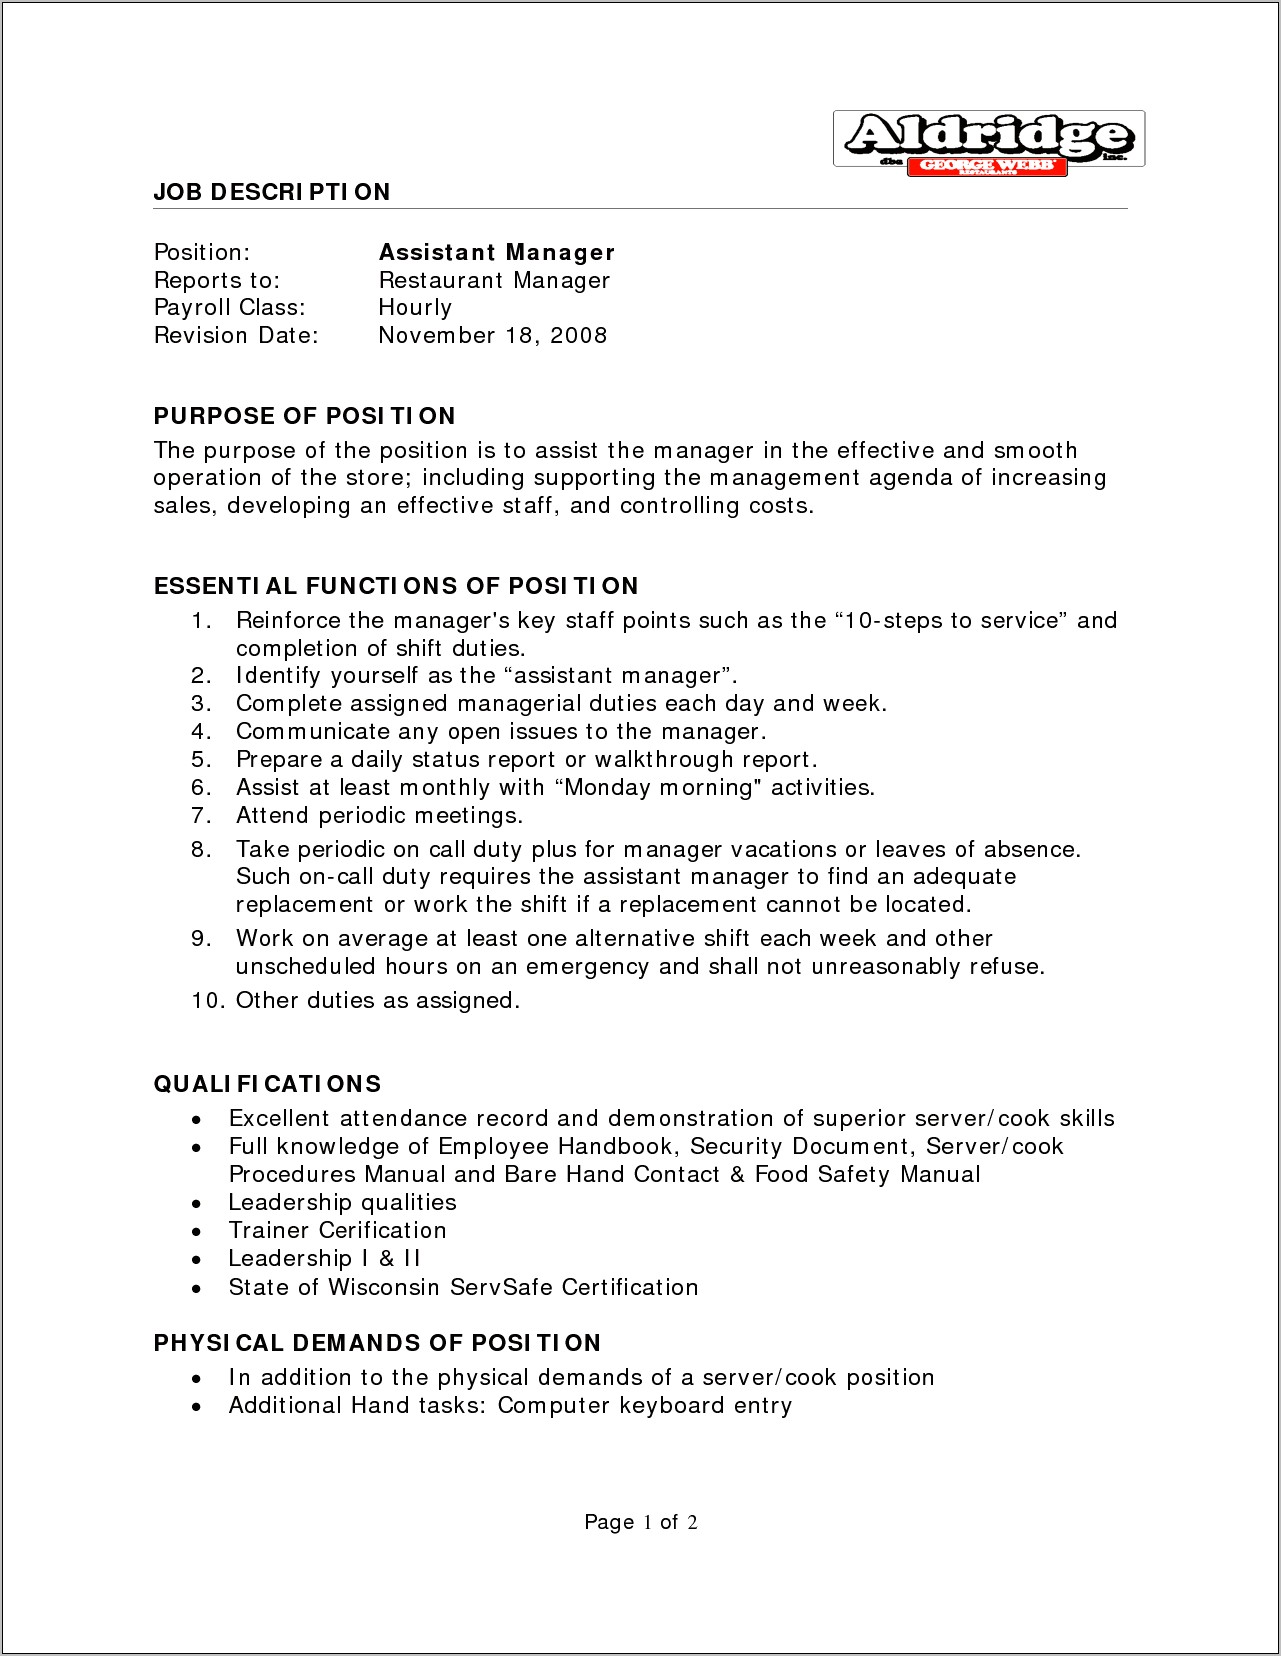 Resume Description For Restaurant Assistant Manager